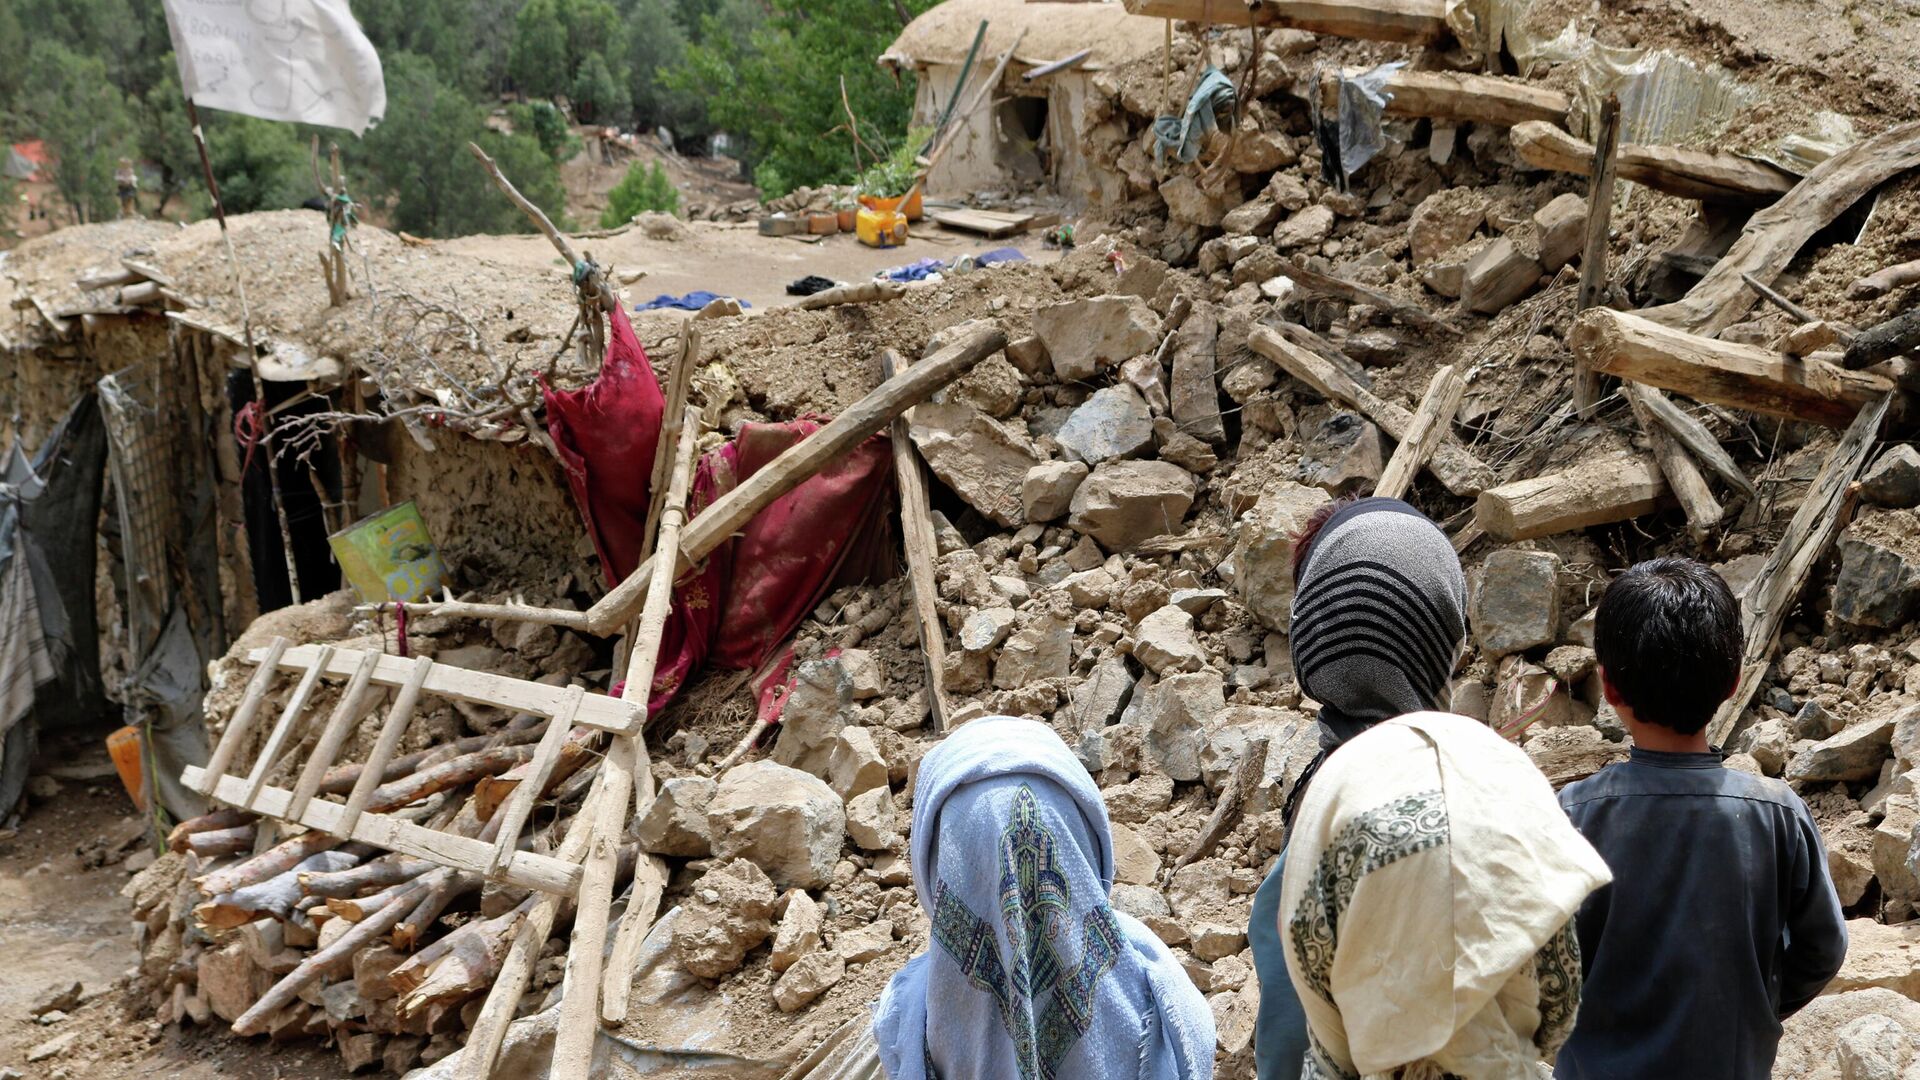 Афганские дети стоят возле дома, который был разрушен в результате землетрясения, Афганистан, 22 июня 2022 г - Sputnik Таджикистан, 1920, 23.06.2022